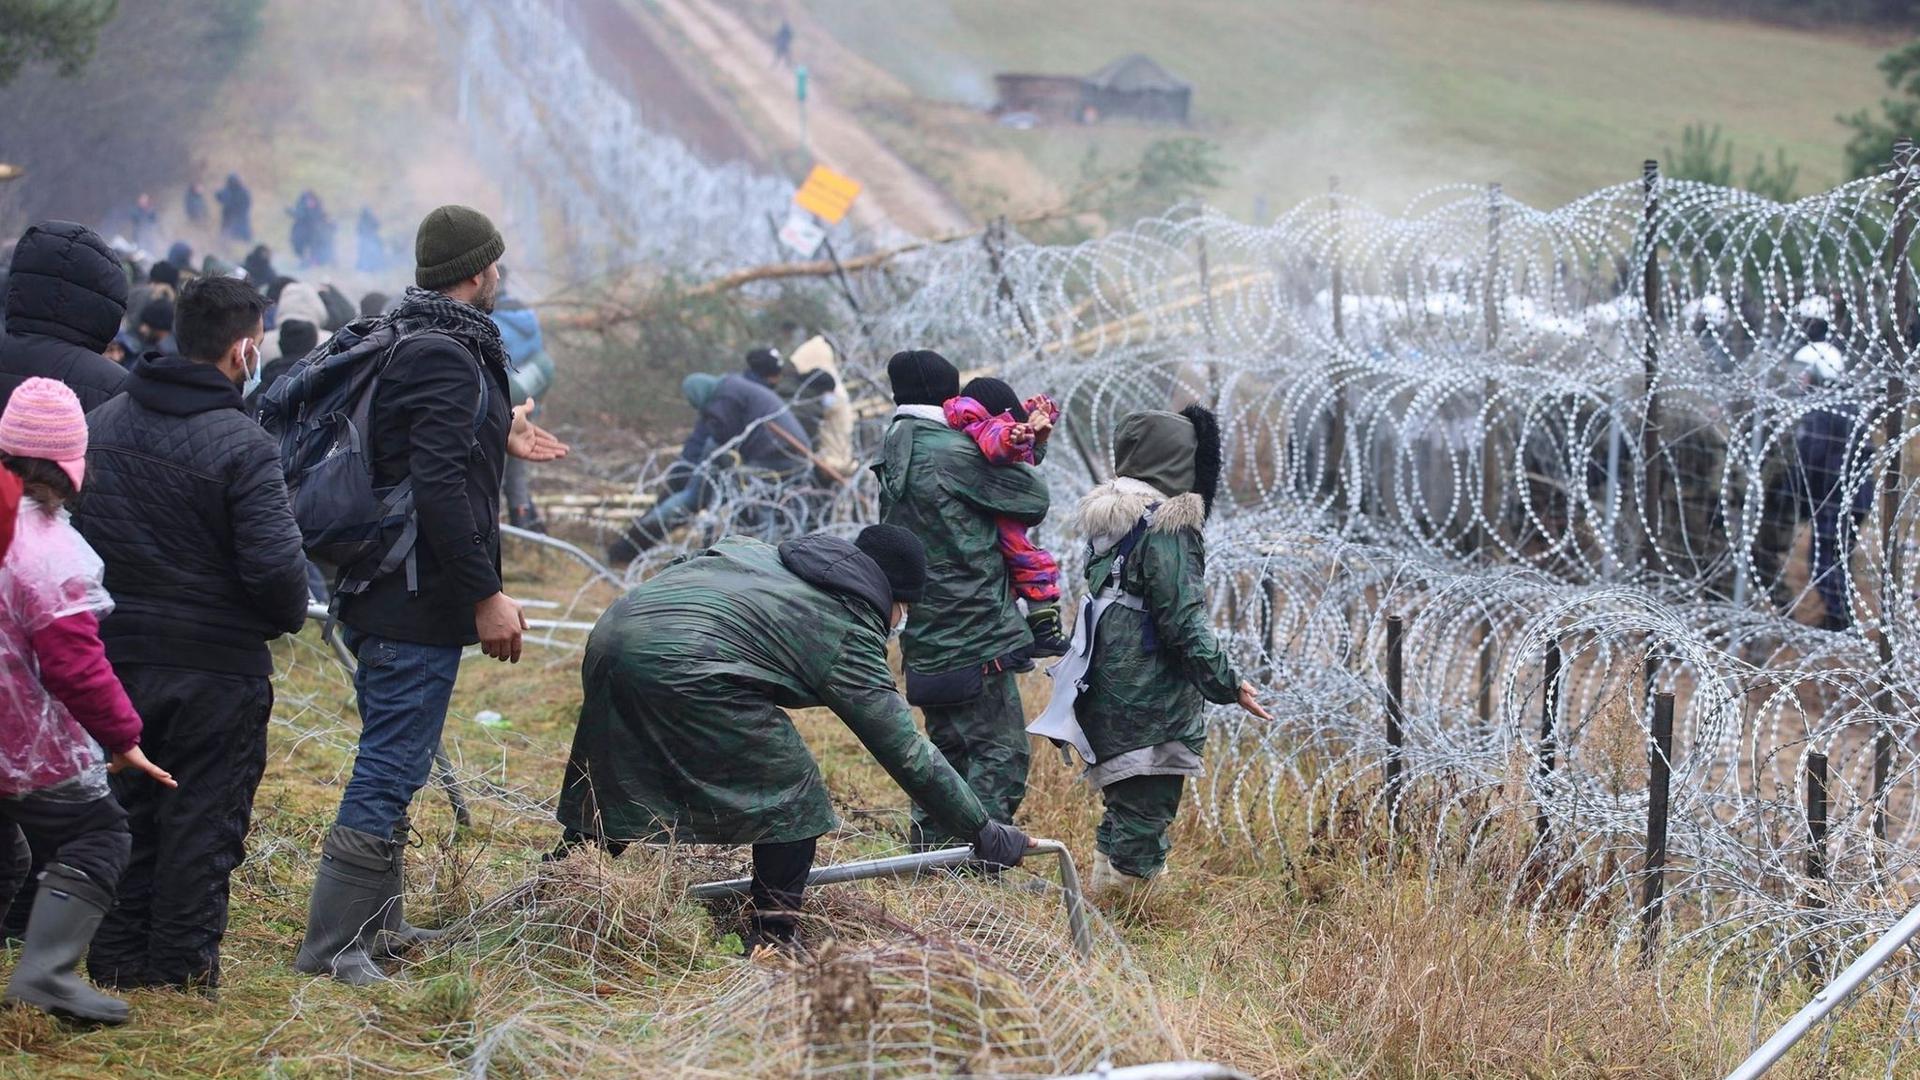 Getrennt durch Stacheldraht: Migranten stehen an der Grenze auf der belarussischen Seite – auf der polnischen stehen Sicherheitskräfte.